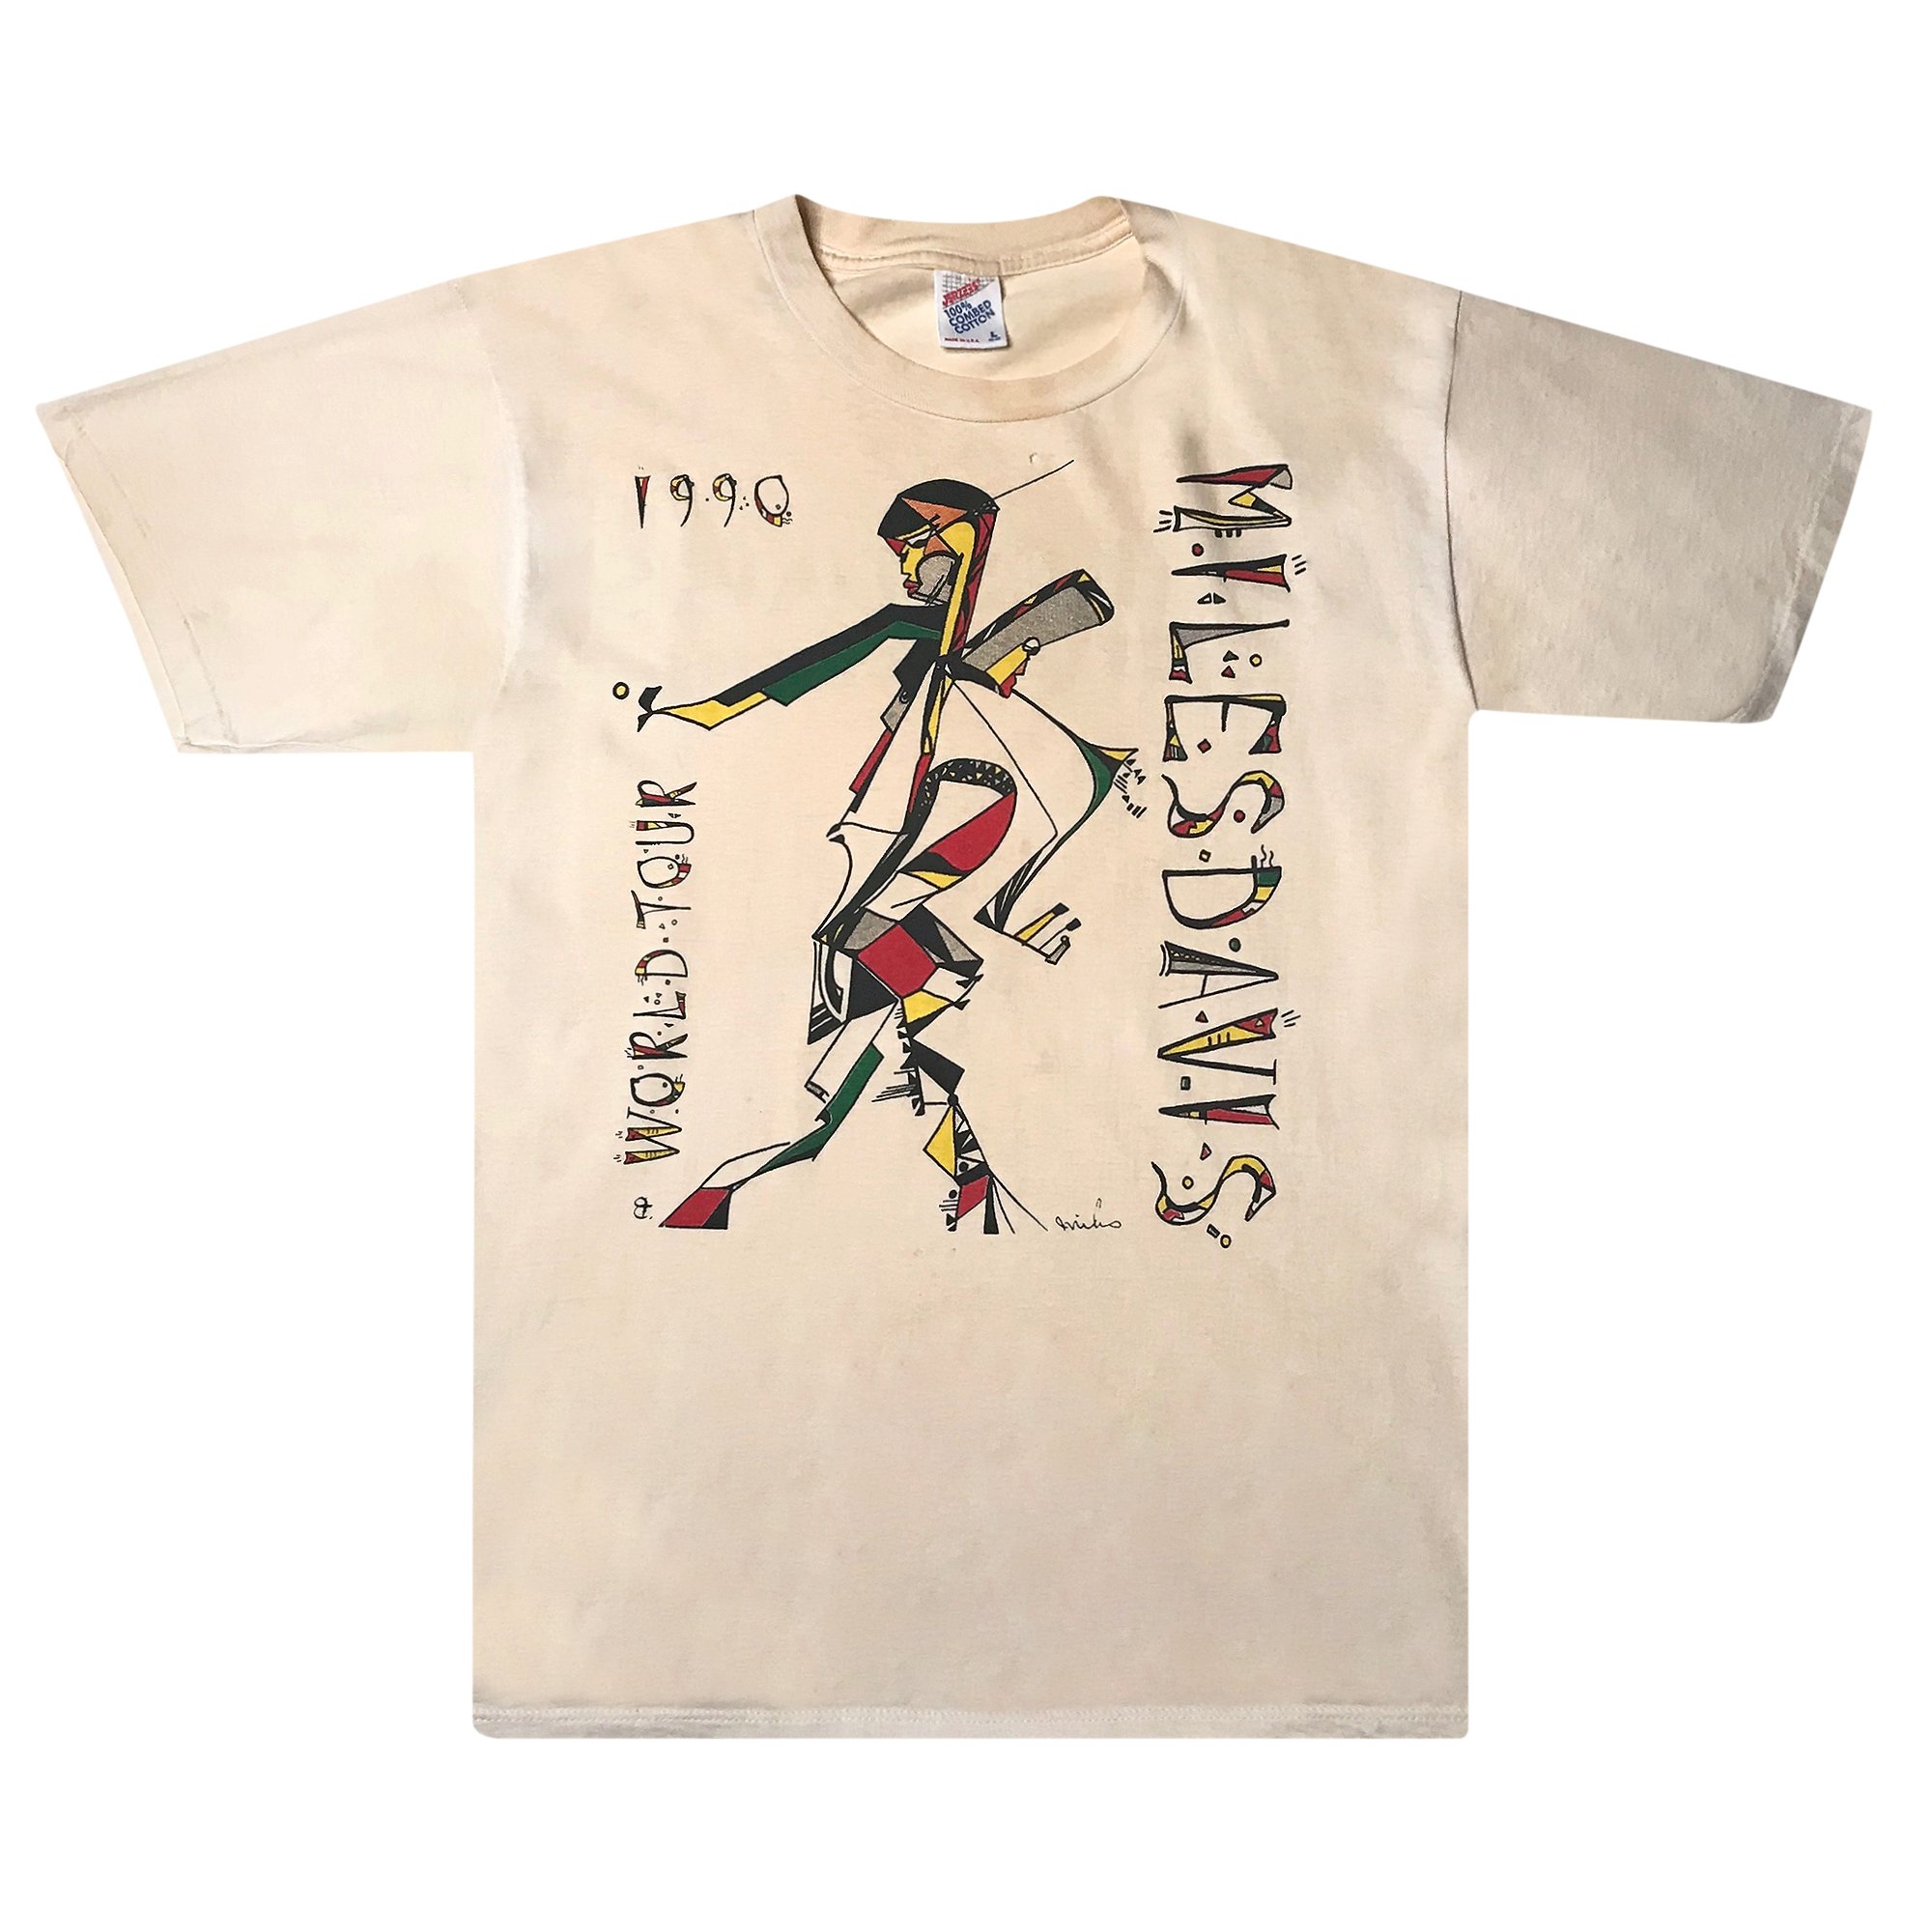 Buy Vintage Miles Davis Last Tour Tee 'Black' - 3099 119900103MDLT ...